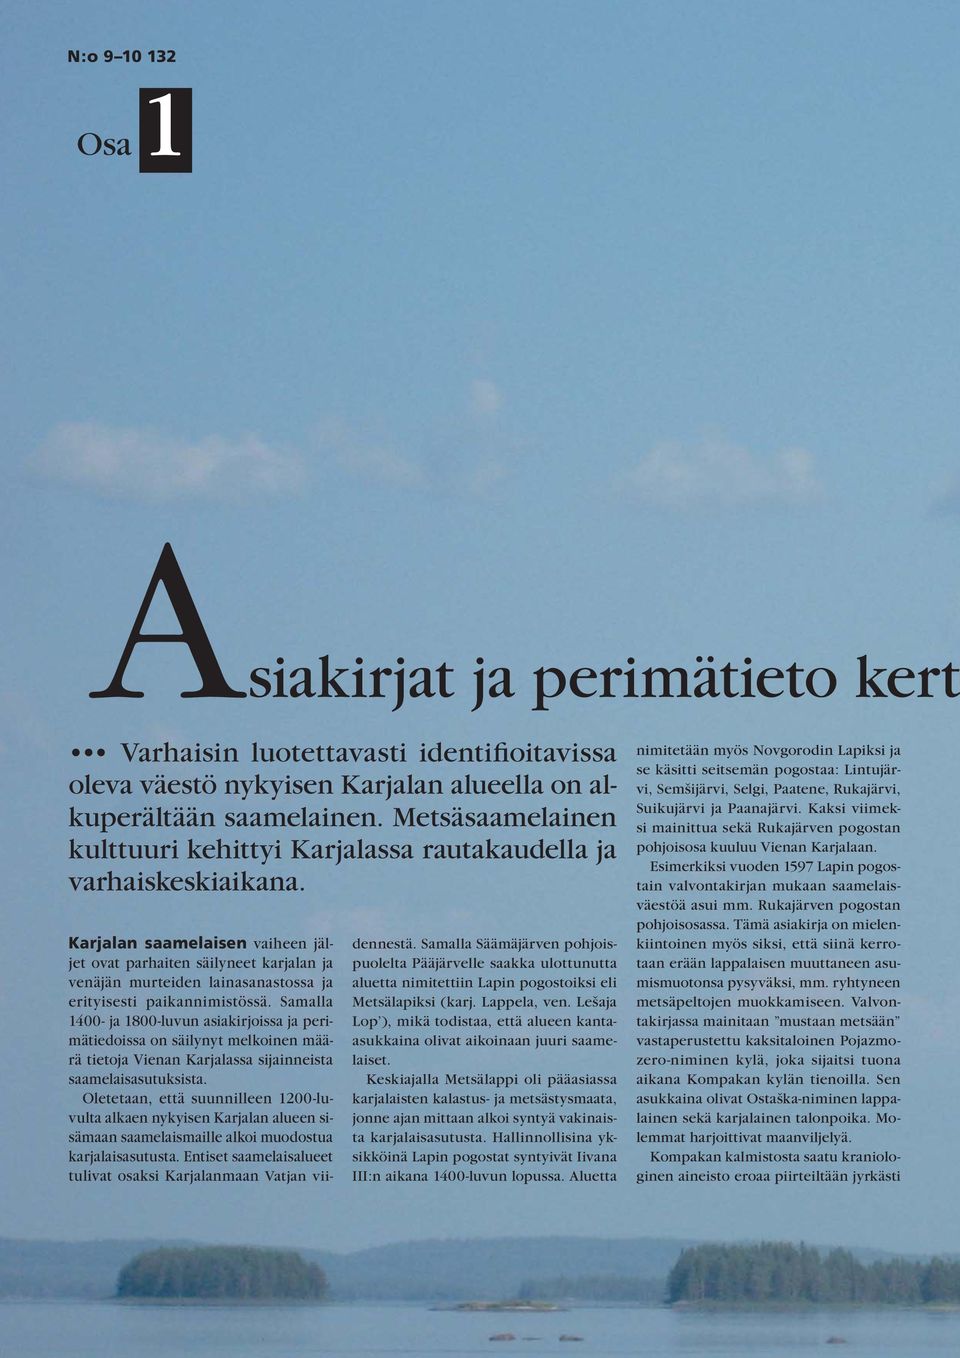 Karjalan saamelaisen vaiheen jäljet ovat parhaiten säilyneet karjalan ja venäjän murteiden lainasanastossa ja erityisesti paikannimistössä.